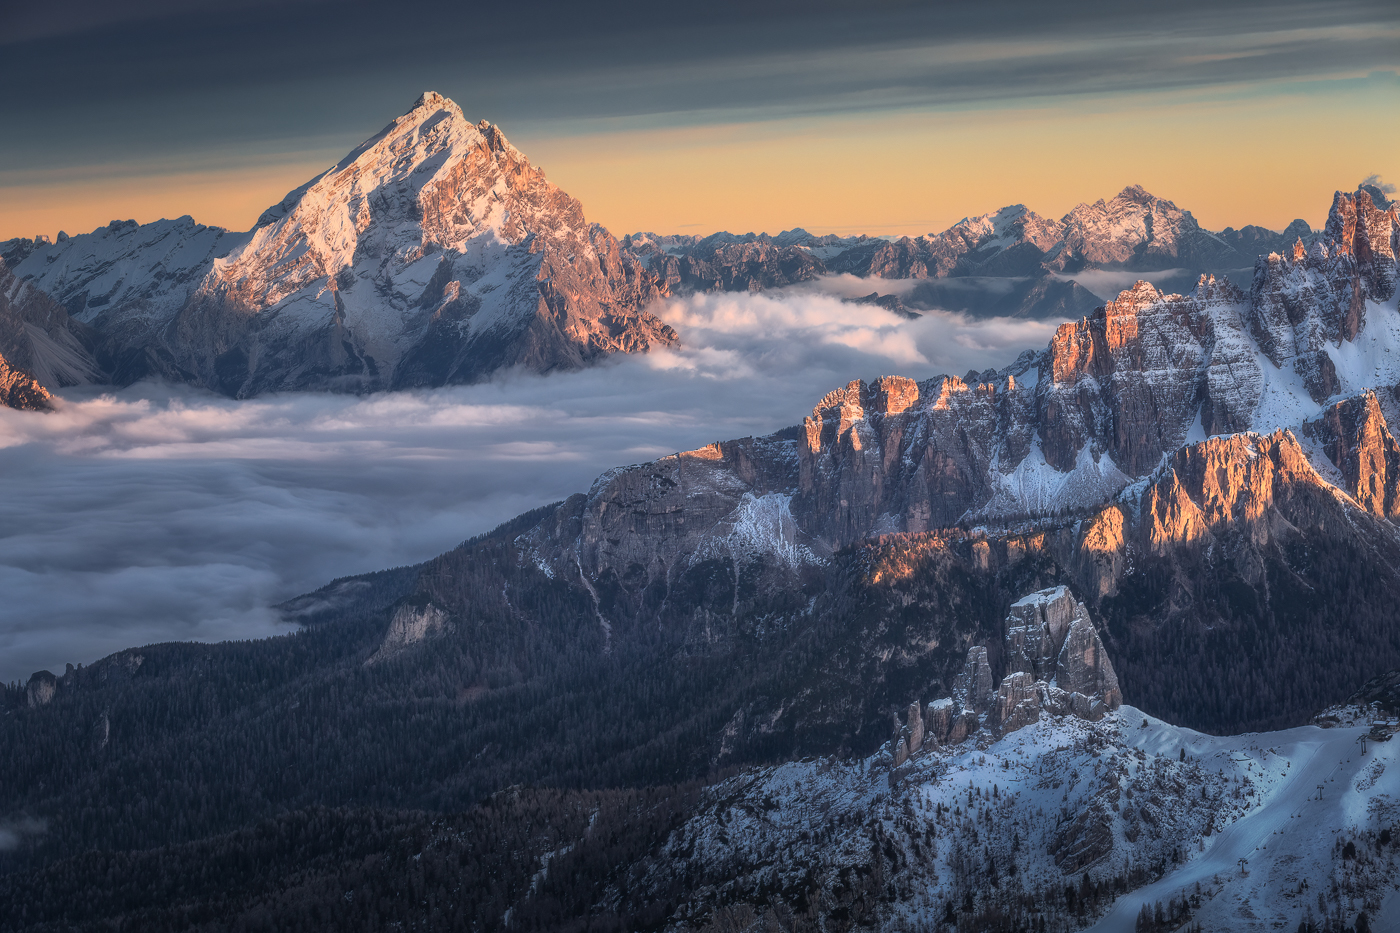 Estese e scure nubi alte danno risalto alle tonalità calde che accendono il Re delle Dolomiti, il monte Antelao. La Valle del Boite, invece, è già sommersa dall’oscurità. Dolomiti Ampezzane, Italia.